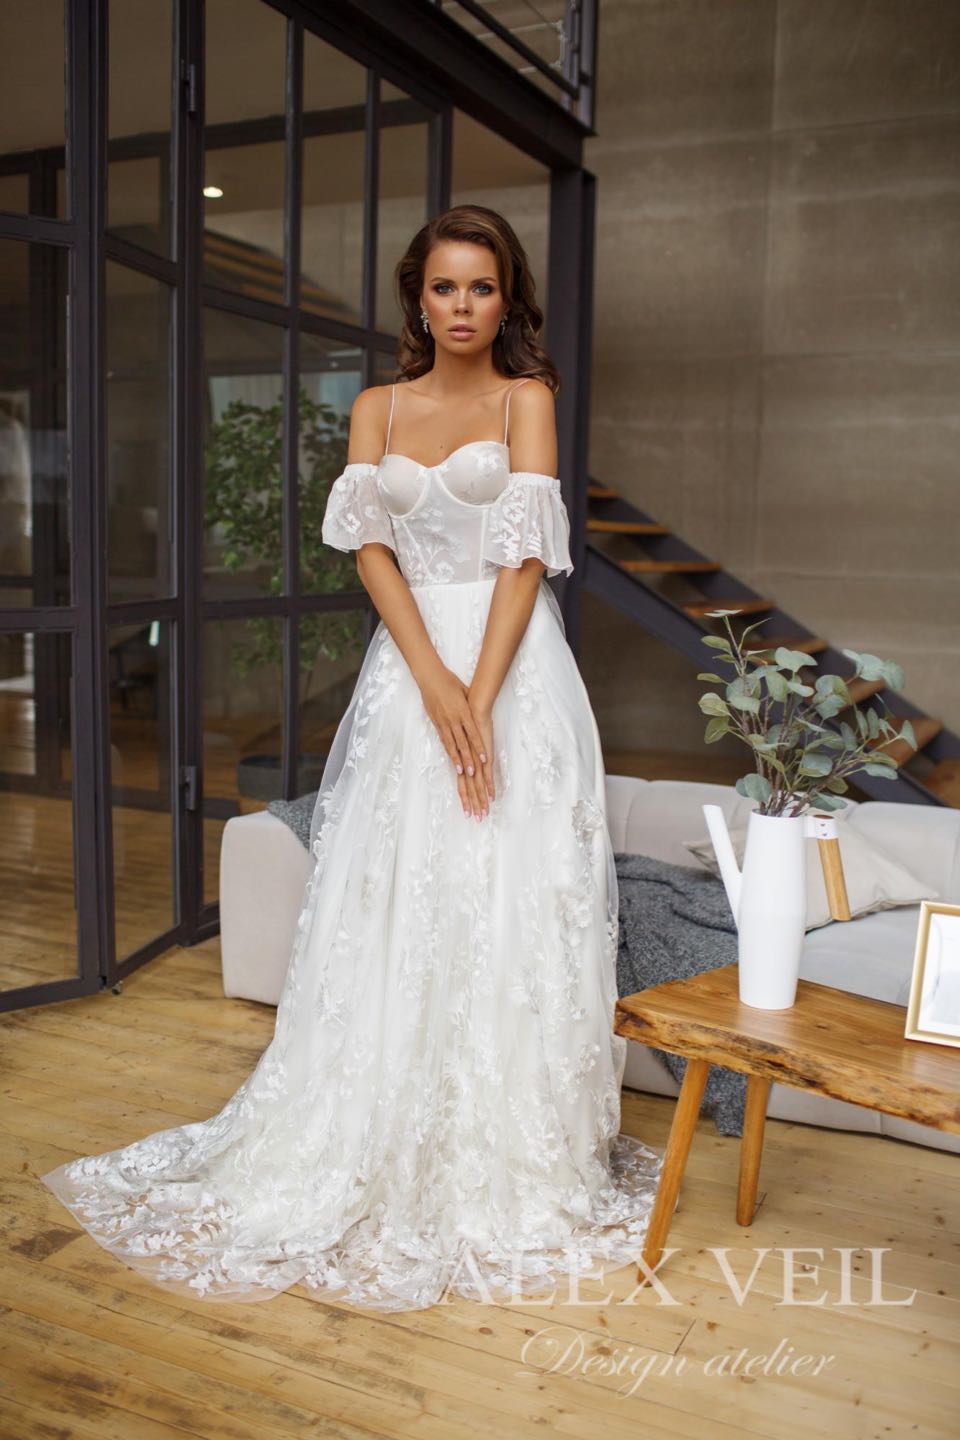 Свадебное платье Alex Veil